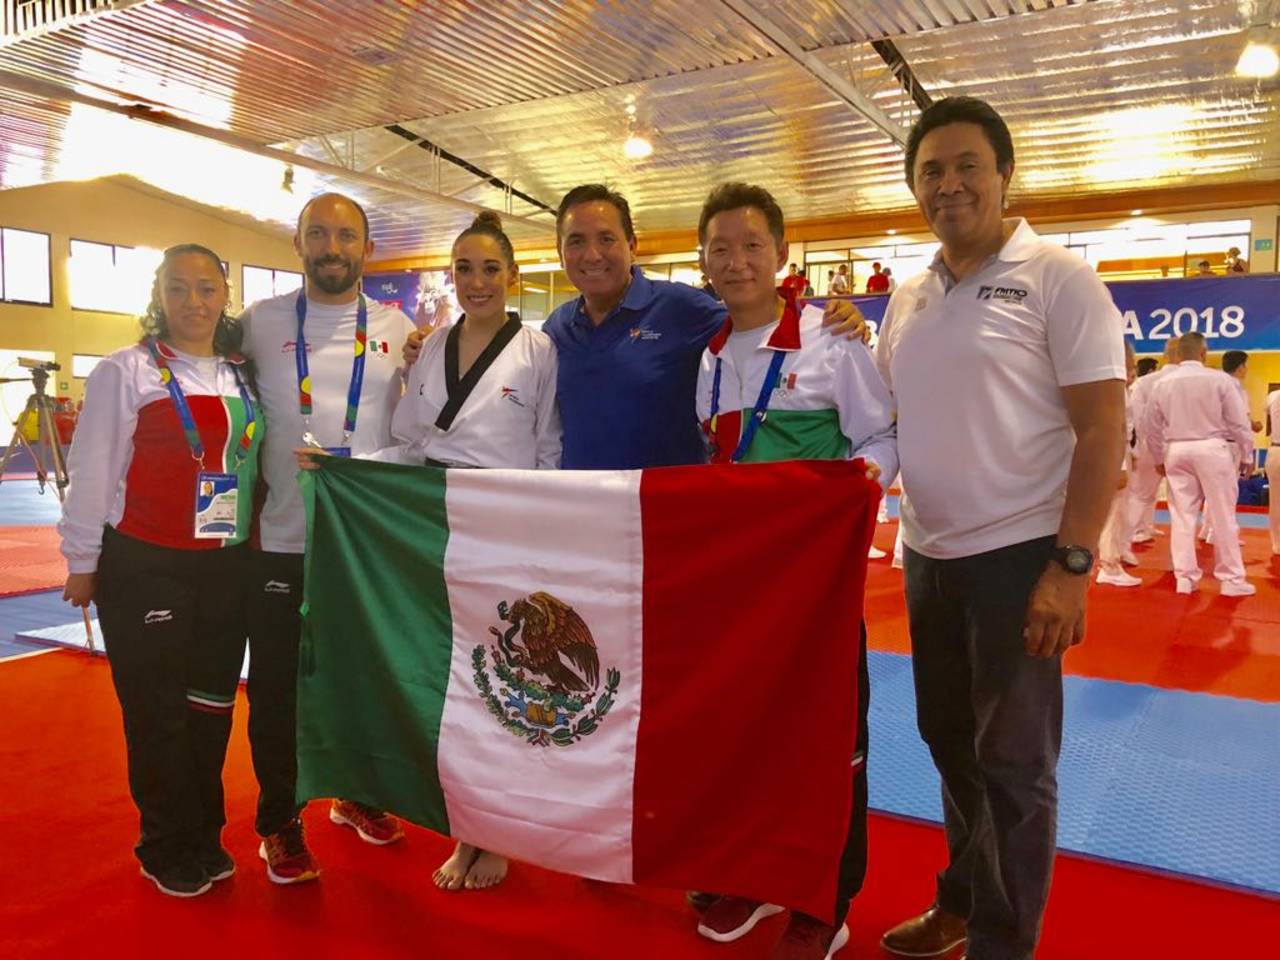 La delegación mexicana de TKD se muestra orgullosa con una bandera tras las participación en el primer día de competencia. Hay felicidad en equipo de taekwondo.